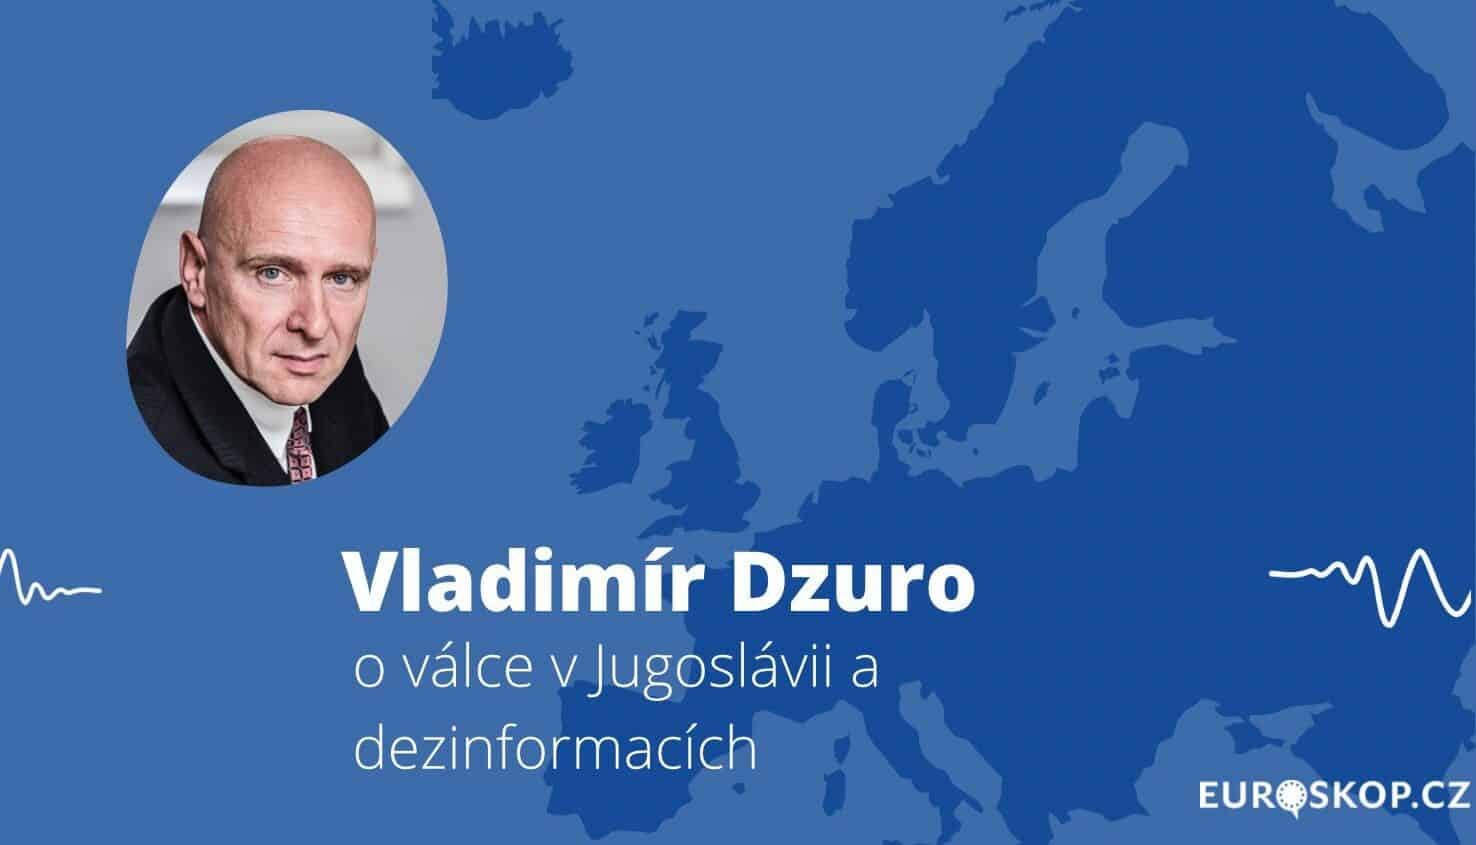 Přečtete si více ze článku Rozhovor s Vladimírem Dzurem o dezinformacích a válce v Jugoslávii